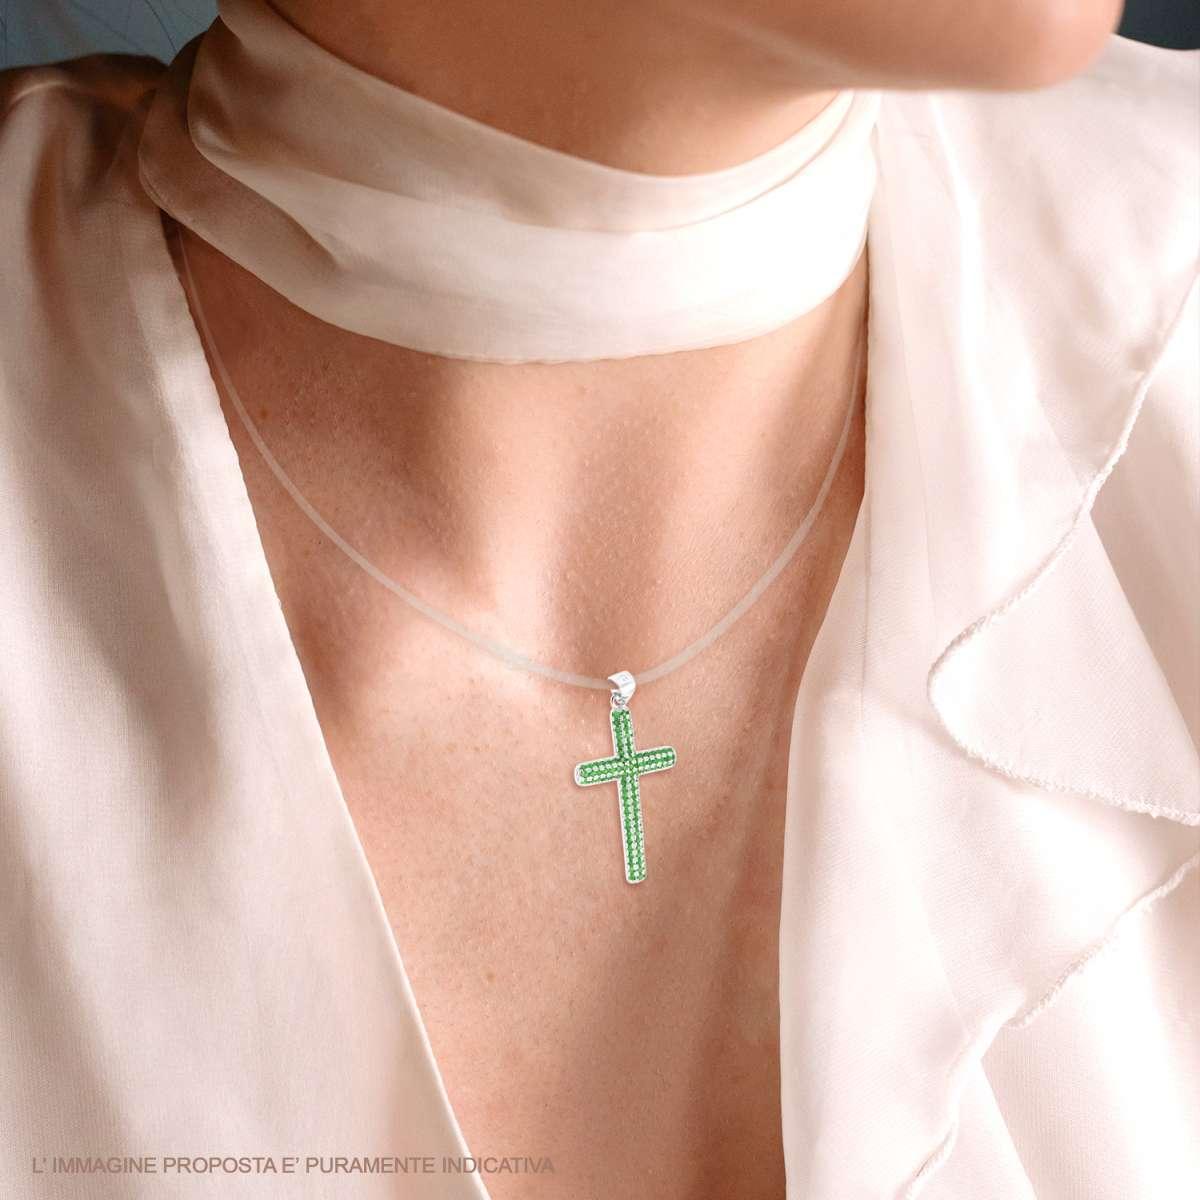 Ciondolo Croce con Cubic Zirconia Verde Smeraldo in ARGENTO 925 Galvanica Rodio